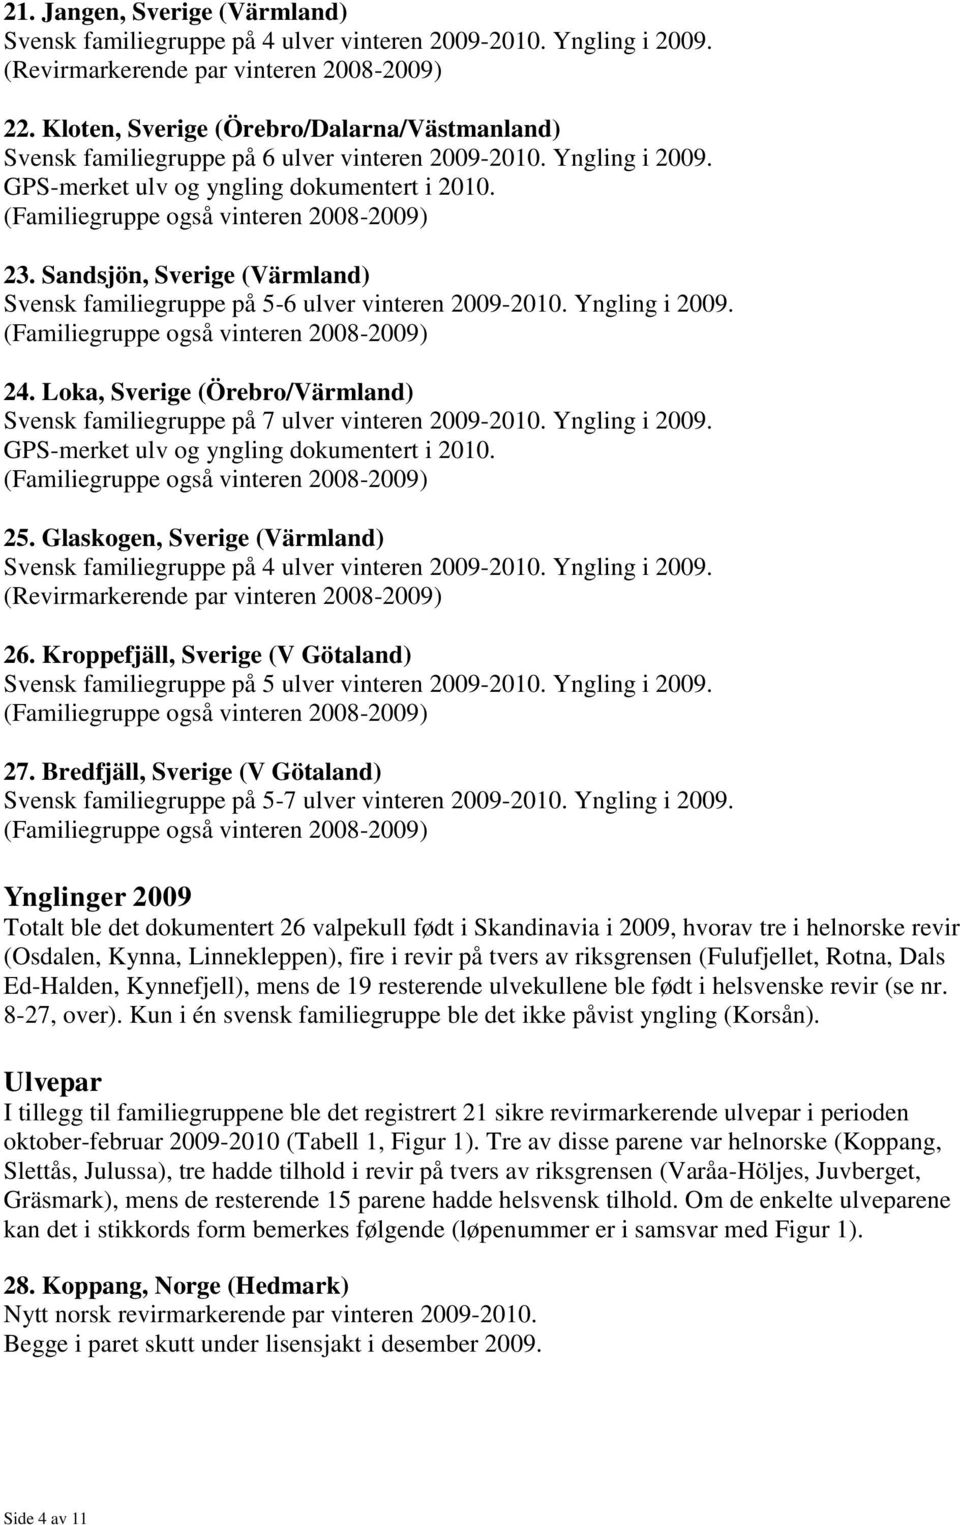 Yngling i 2009. 24. Loka, Sverige (Örebro/Värmland) Svensk familiegruppe på 7 ulver vinteren 2009-2010. Yngling i 2009. 25.